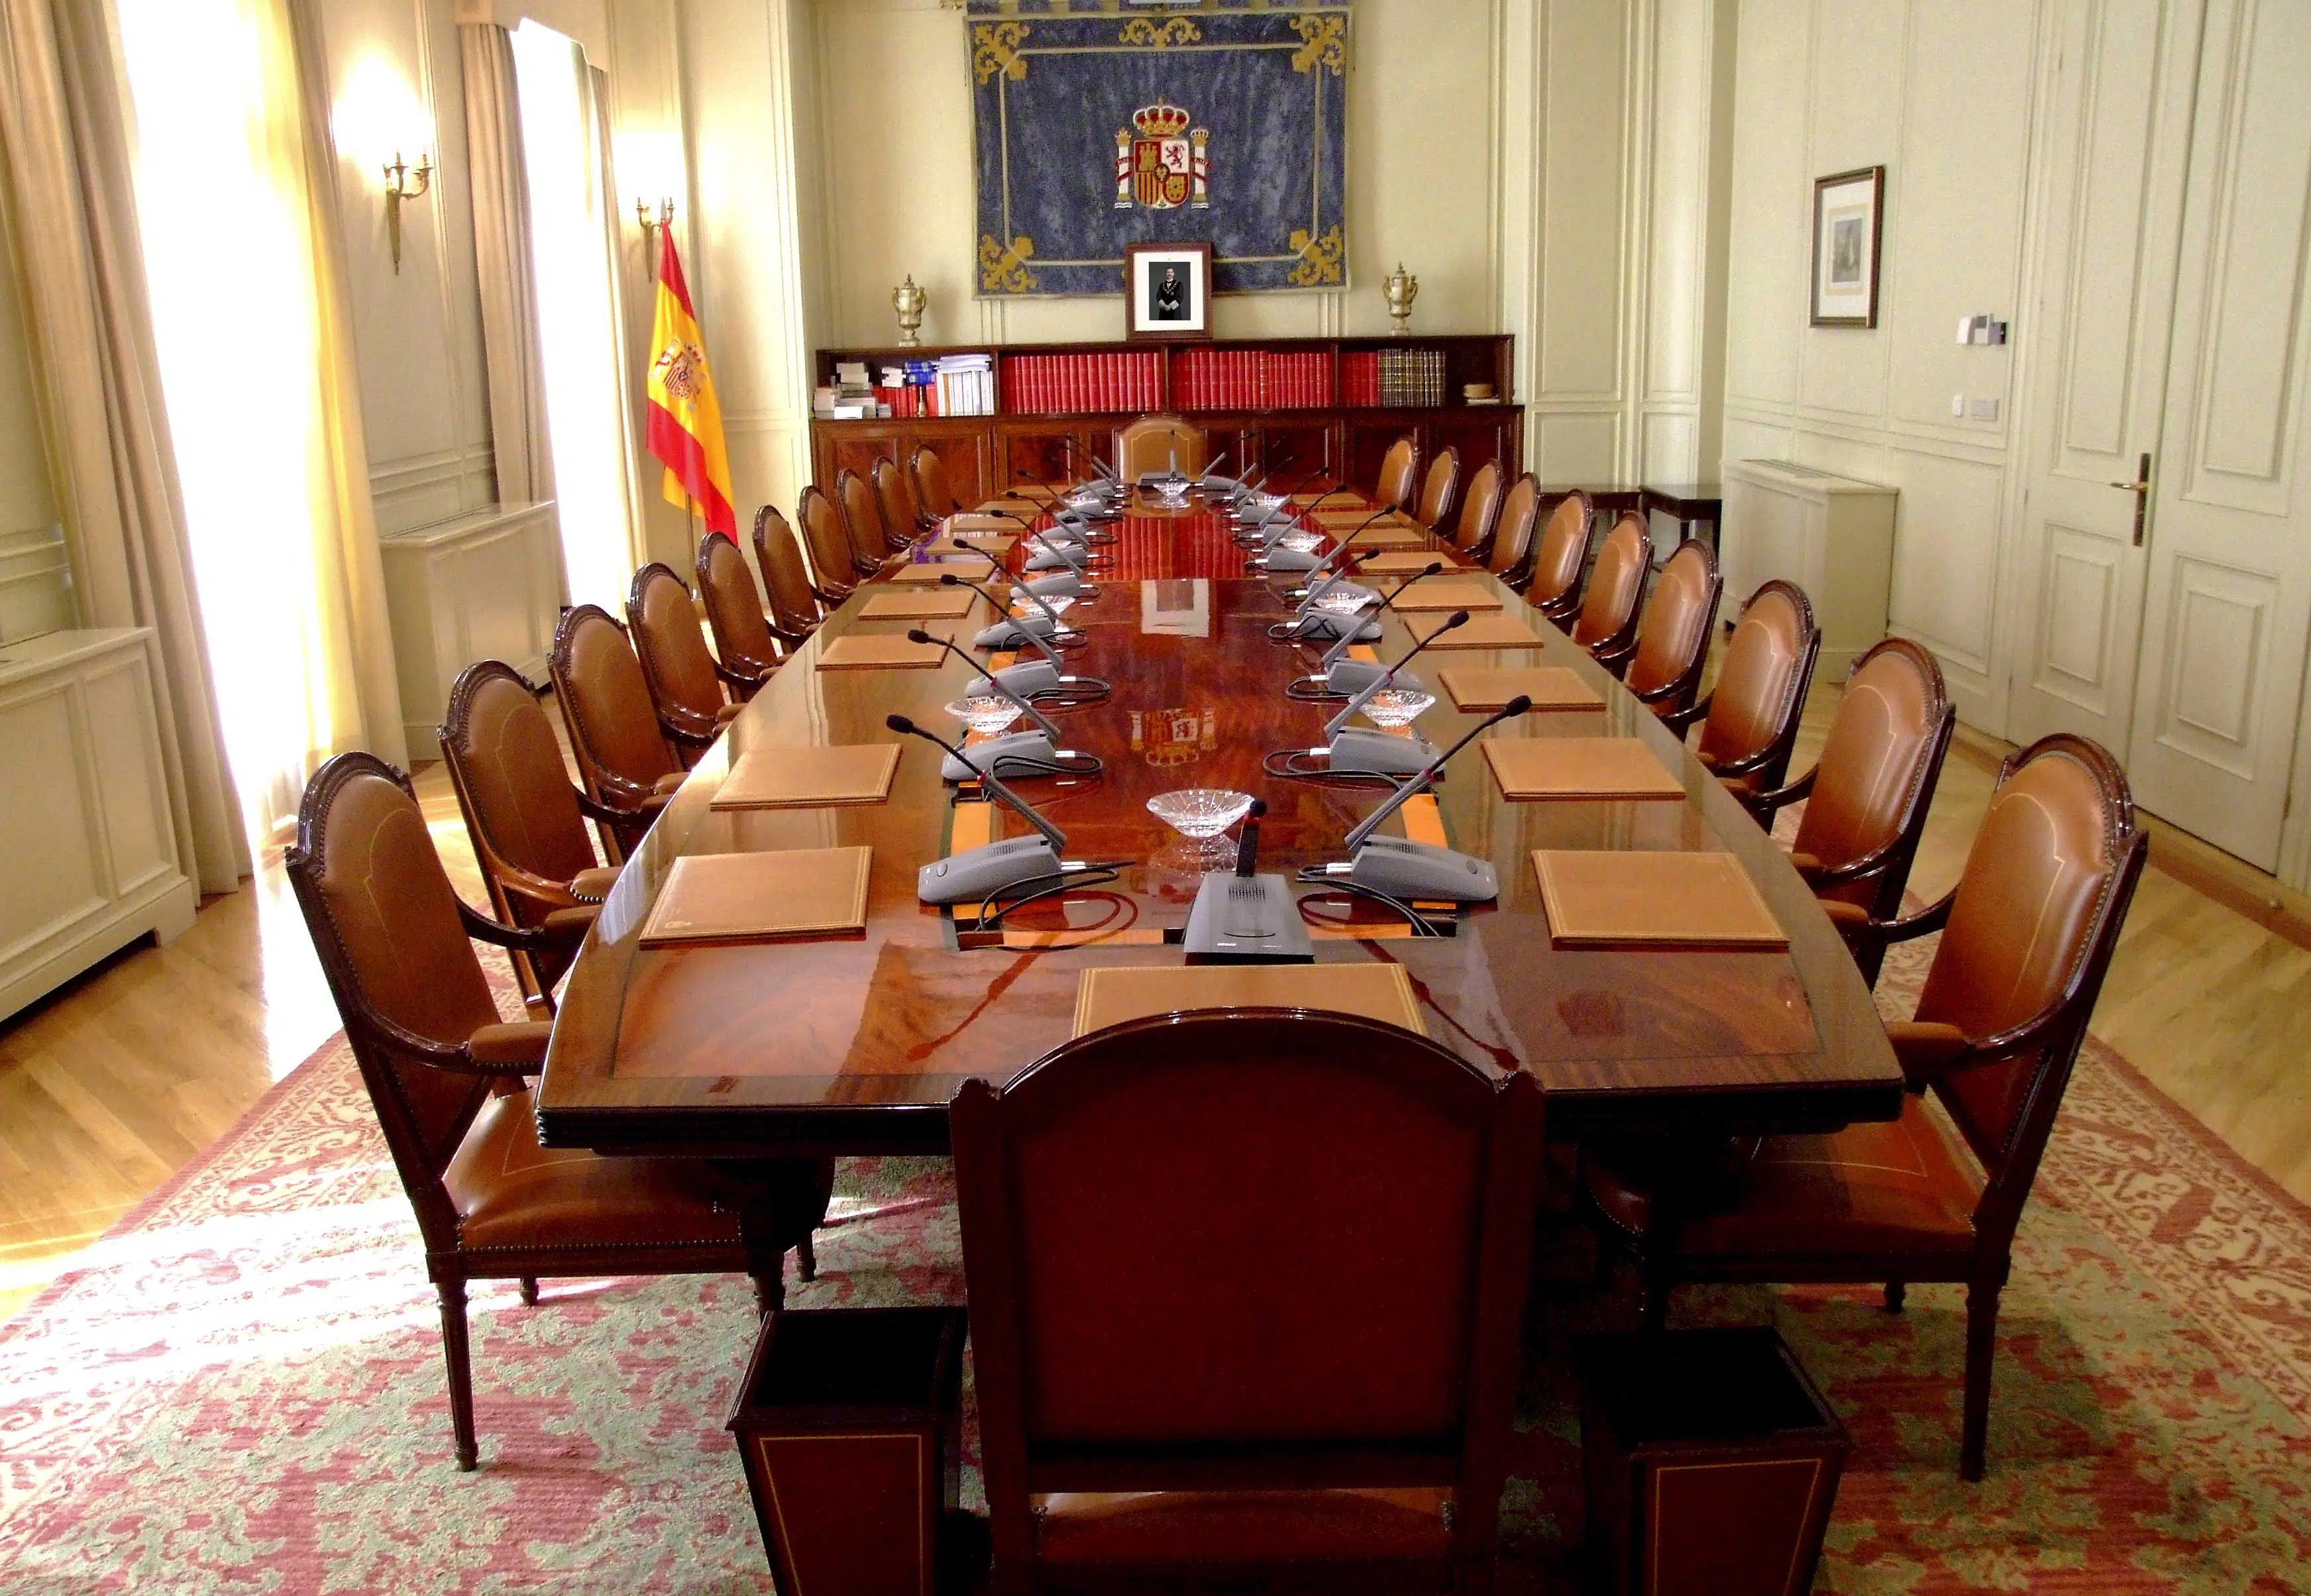 GRECO reprocha a España que los 12 vocales jueces del CGPJ no sean elegidos por la carrera judicial